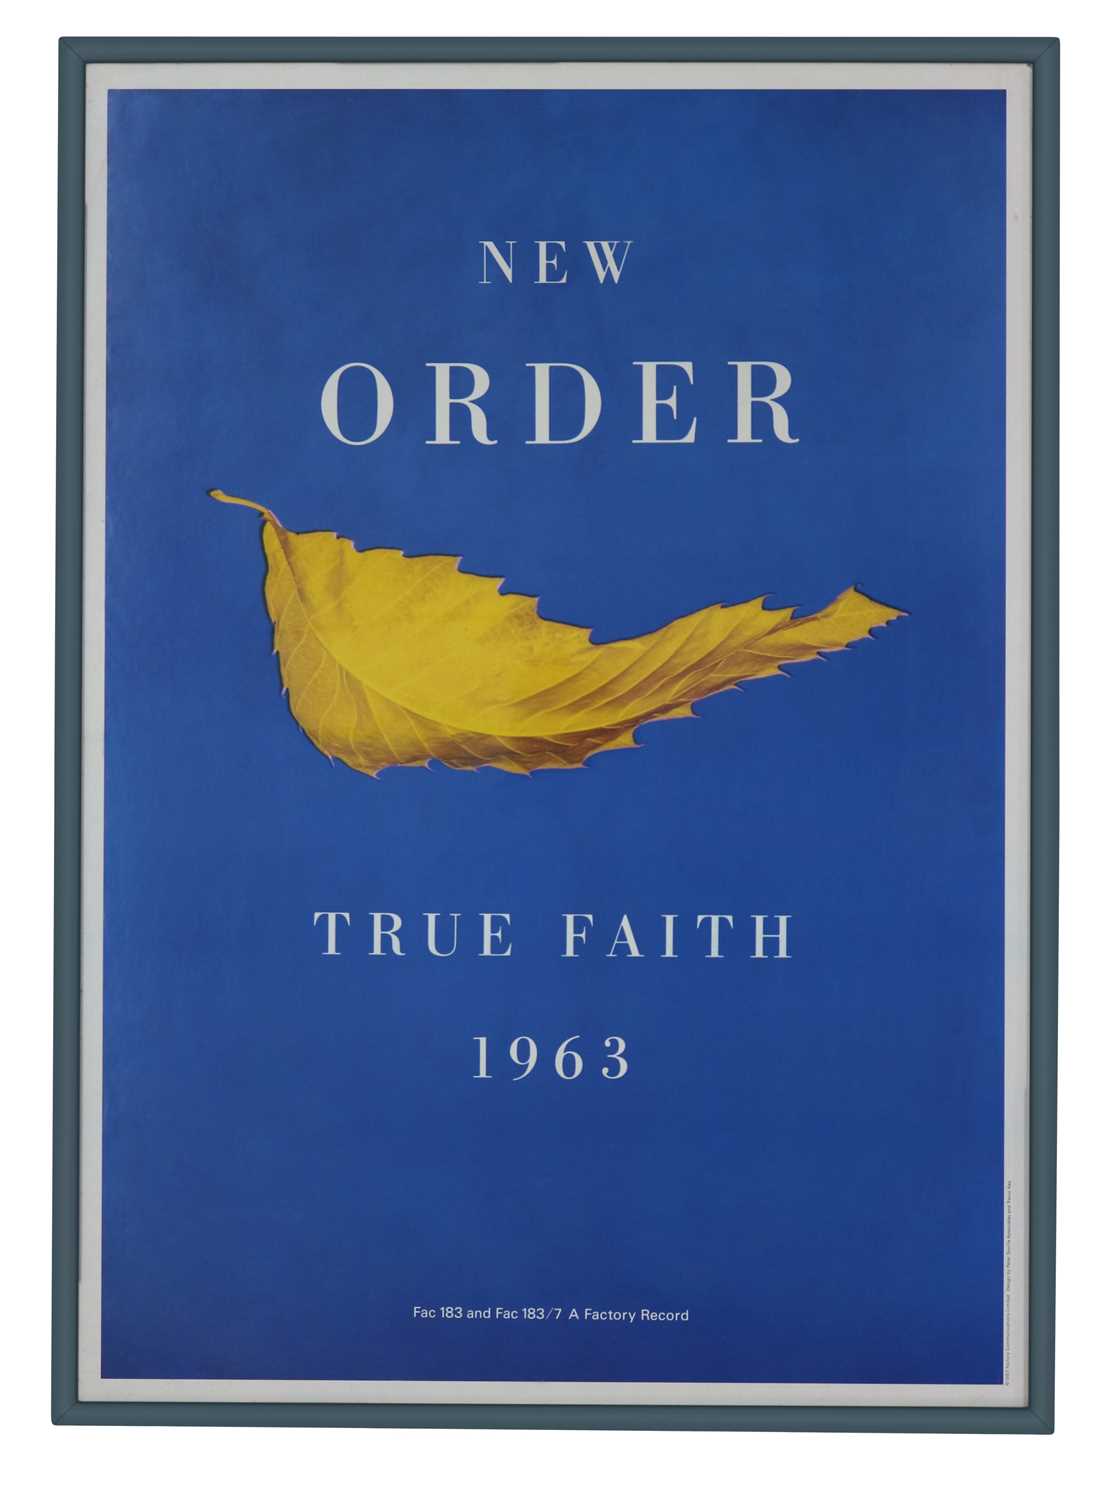 NEW ORDER TRUE FAITH 1963 ORIGINAL PROMO